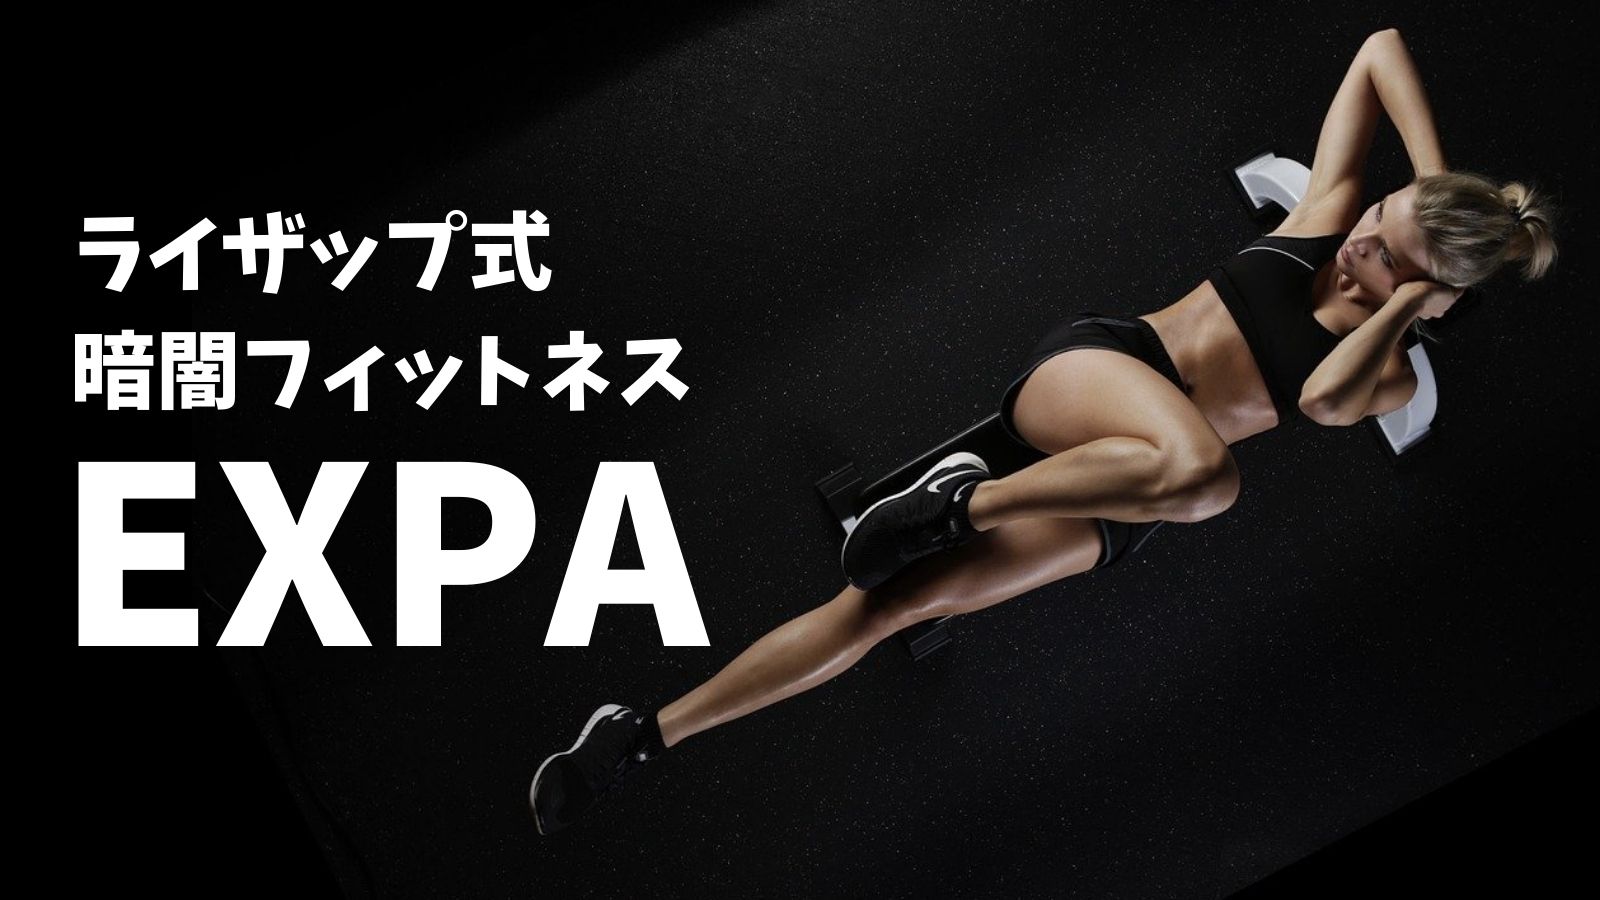 EXPA(エクスパ)はライザップ系列のフィットネスジム！体験レッスンの仕組みや口コミを徹底調査！